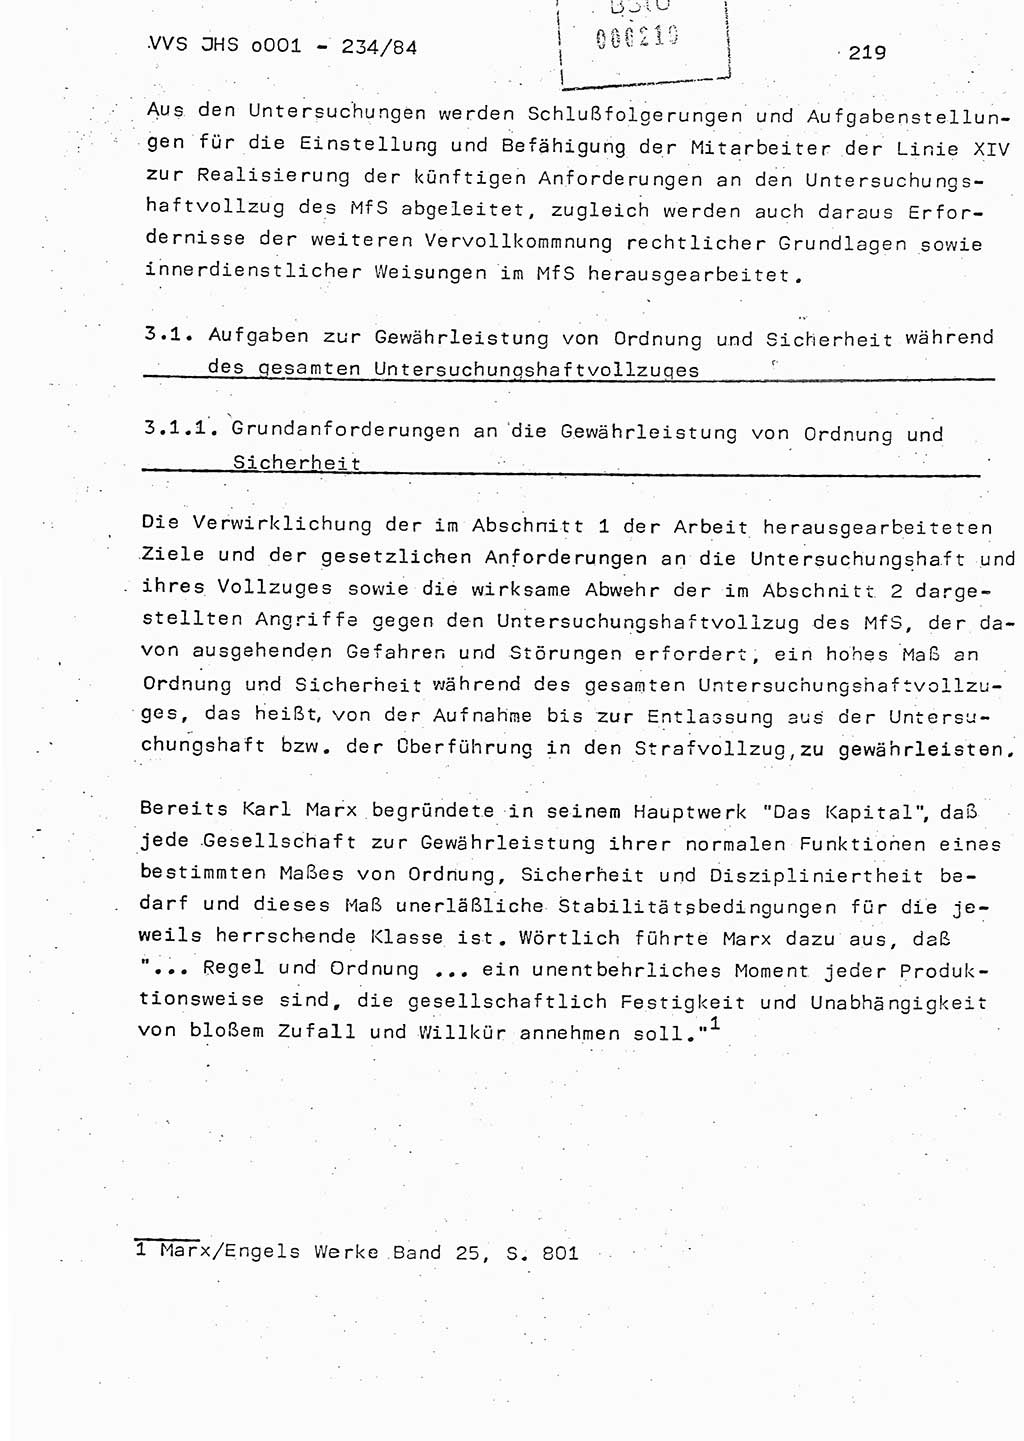 Dissertation Oberst Siegfried Rataizick (Abt. ⅩⅣ), Oberstleutnant Volkmar Heinz (Abt. ⅩⅣ), Oberstleutnant Werner Stein (HA Ⅸ), Hauptmann Heinz Conrad (JHS), Ministerium für Staatssicherheit (MfS) [Deutsche Demokratische Republik (DDR)], Juristische Hochschule (JHS), Vertrauliche Verschlußsache (VVS) o001-234/84, Potsdam 1984, Seite 219 (Diss. MfS DDR JHS VVS o001-234/84 1984, S. 219)